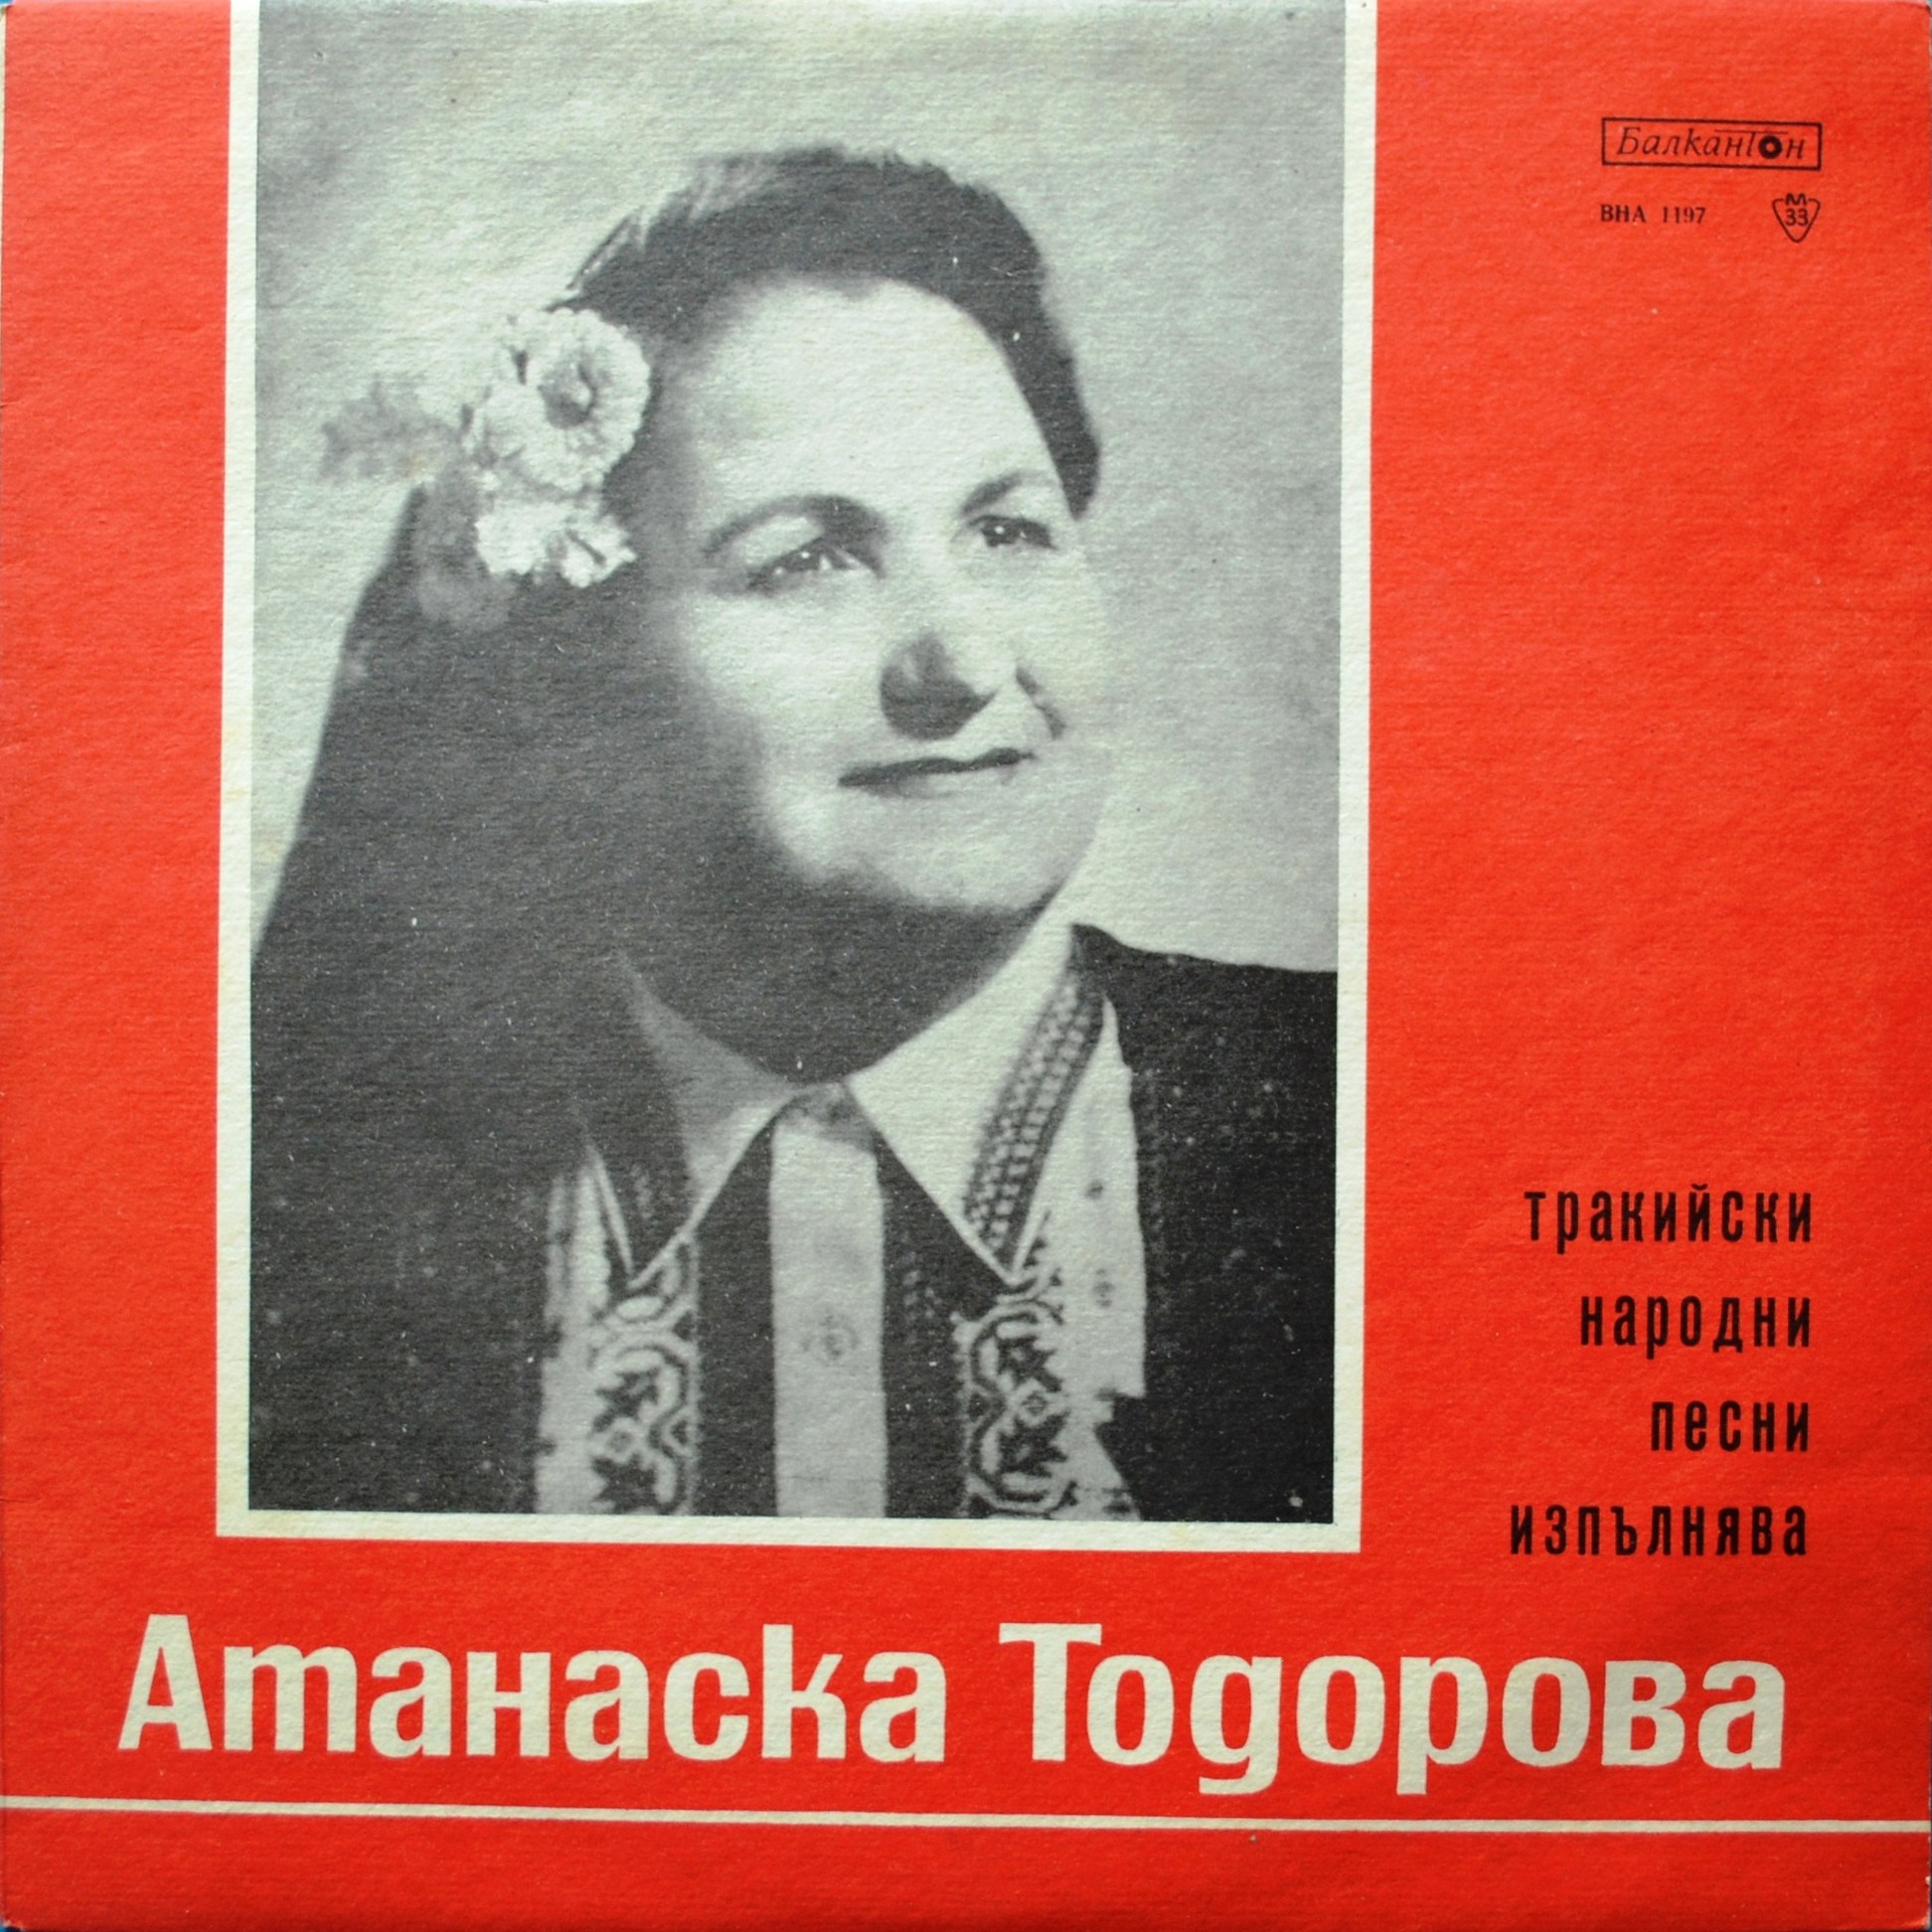 Атанаска ТОДОРОВА изпълнява тракийски народни песни